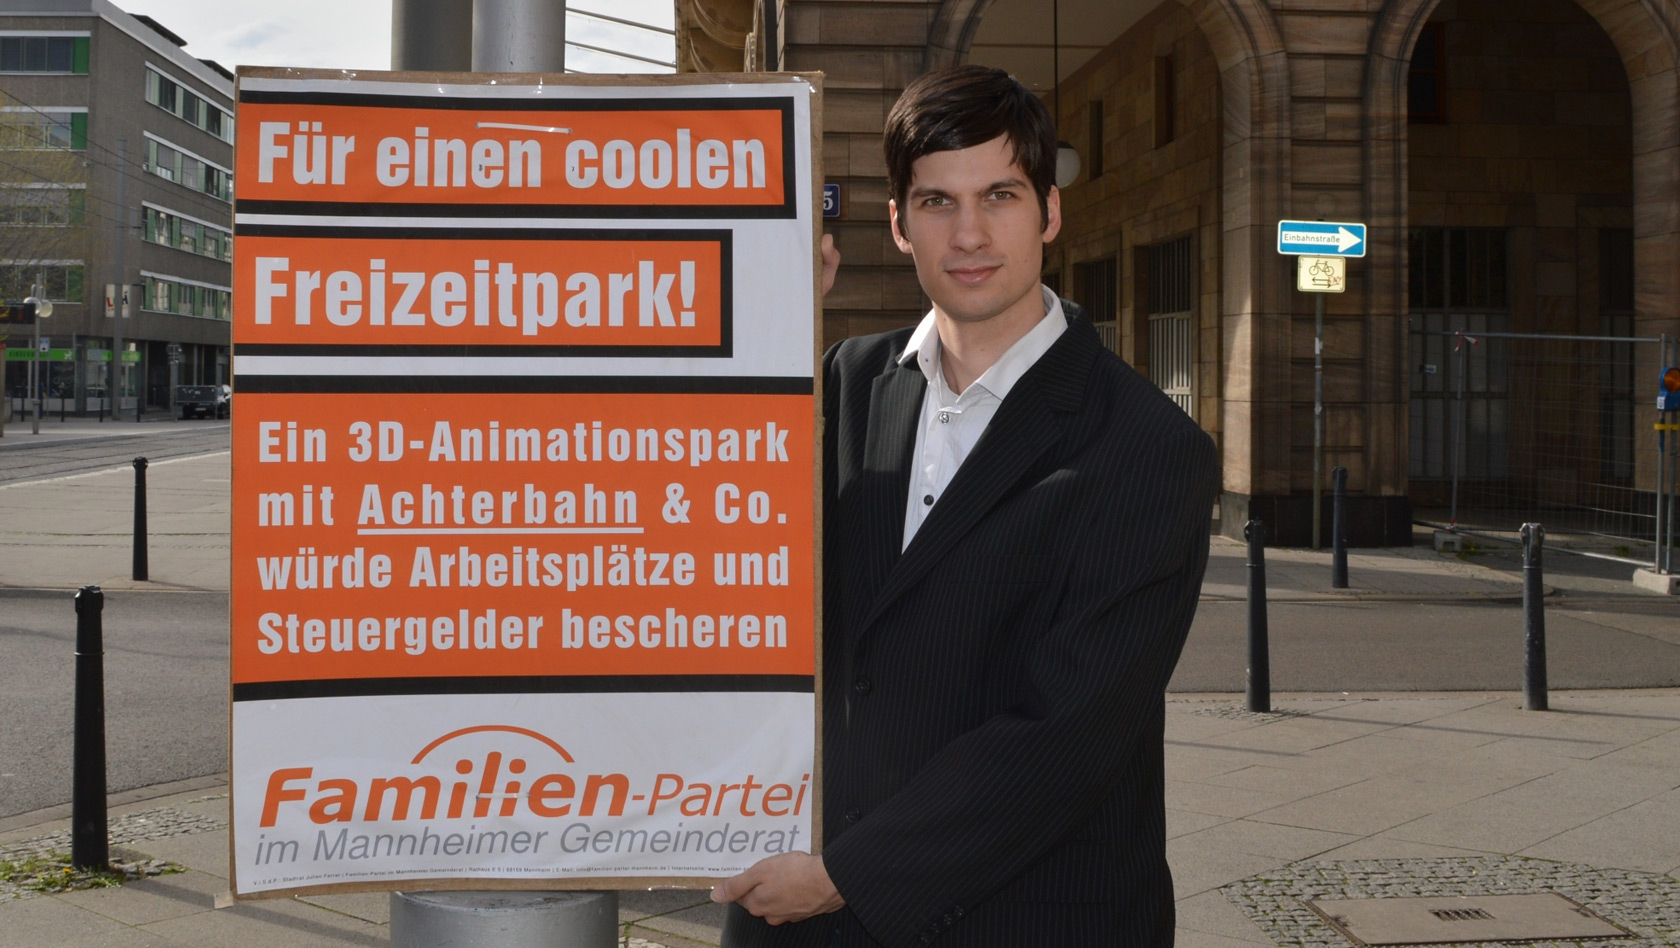 Kampagne für Freizeitpark in Mannheim 2018 mit Julian Ferrat von der Familien-Partei